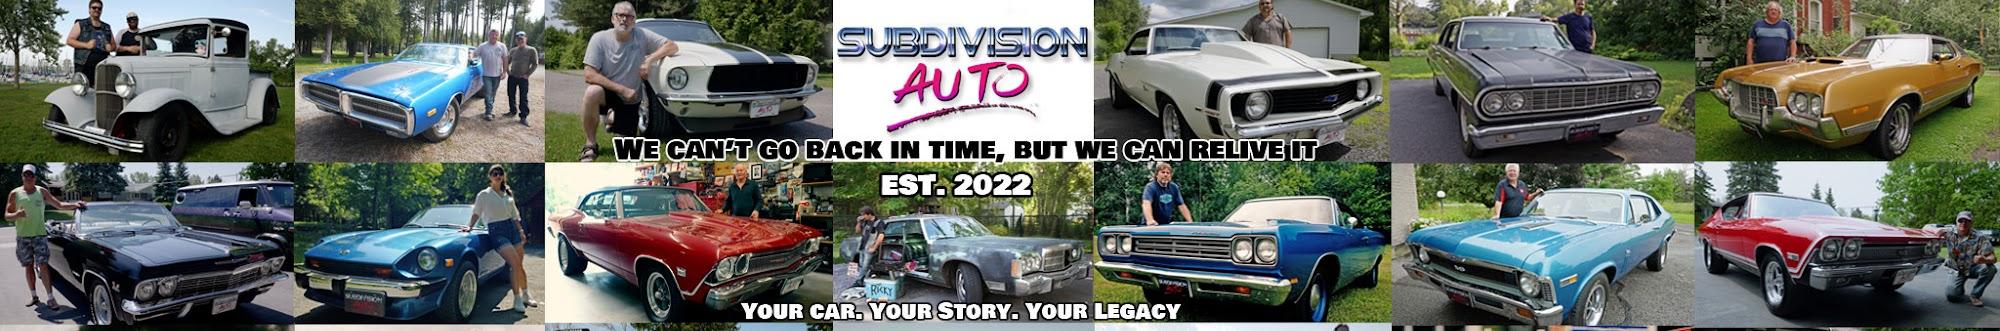 Subdivision Auto